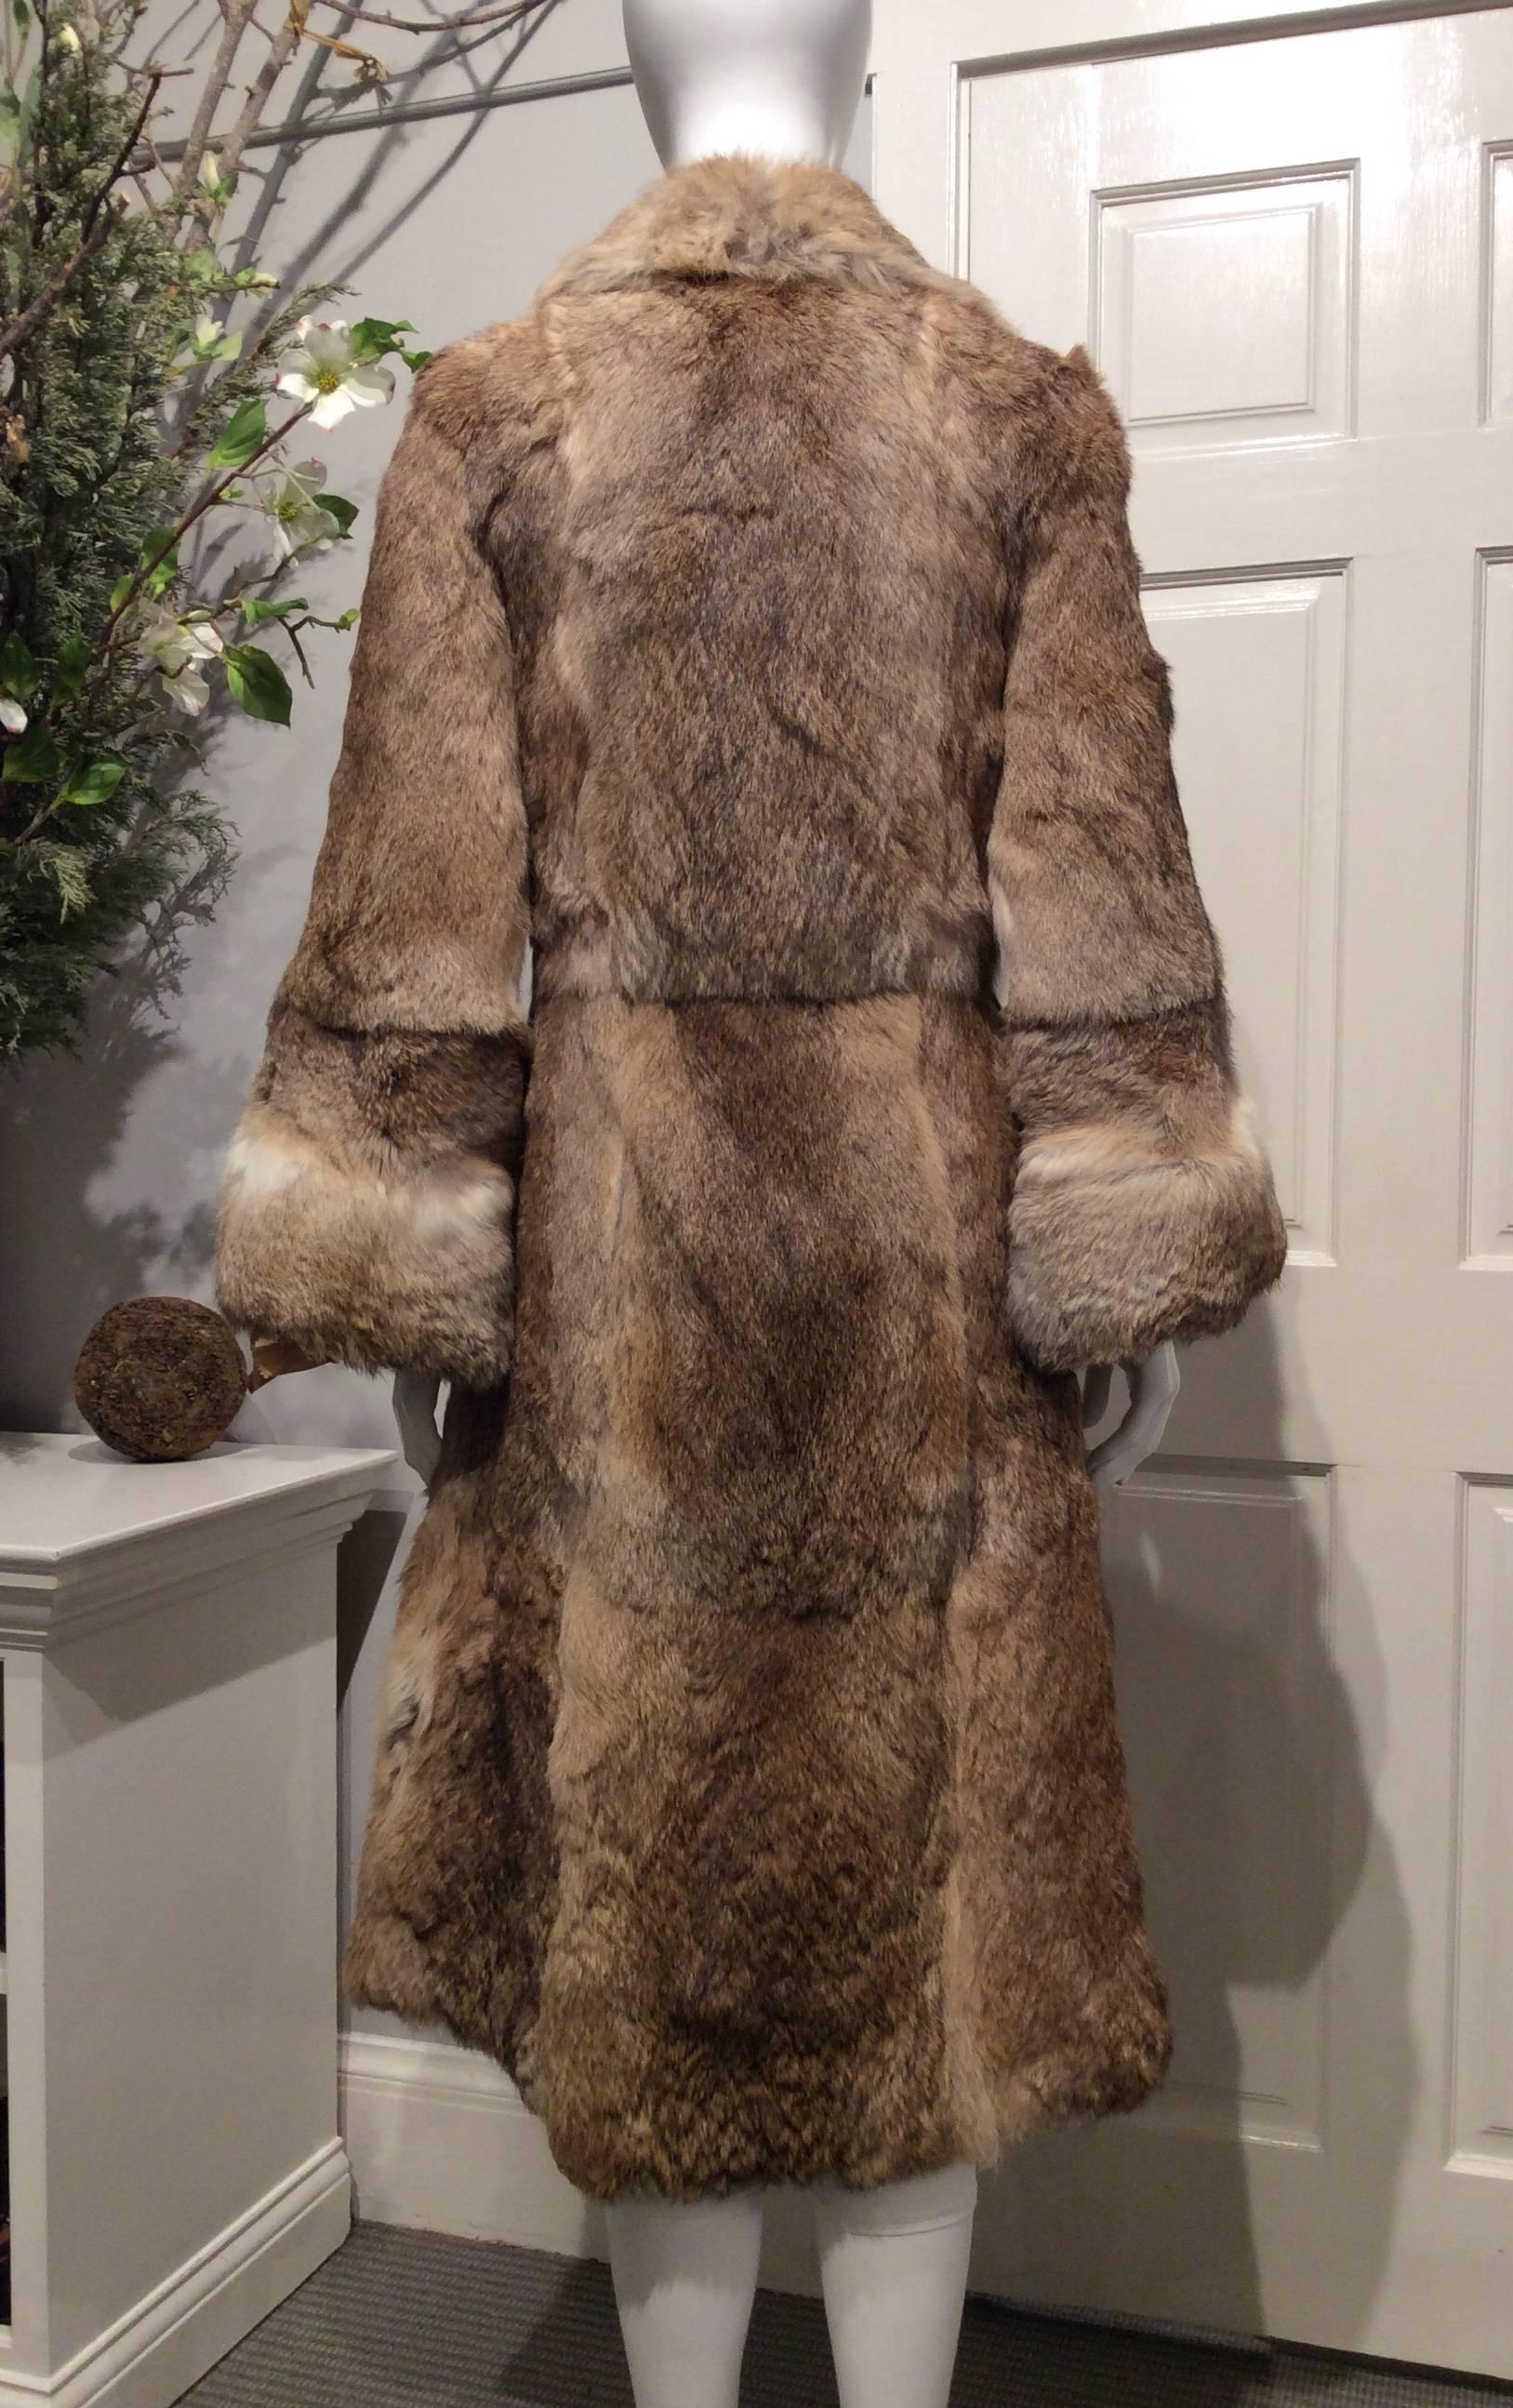 royal fur coat